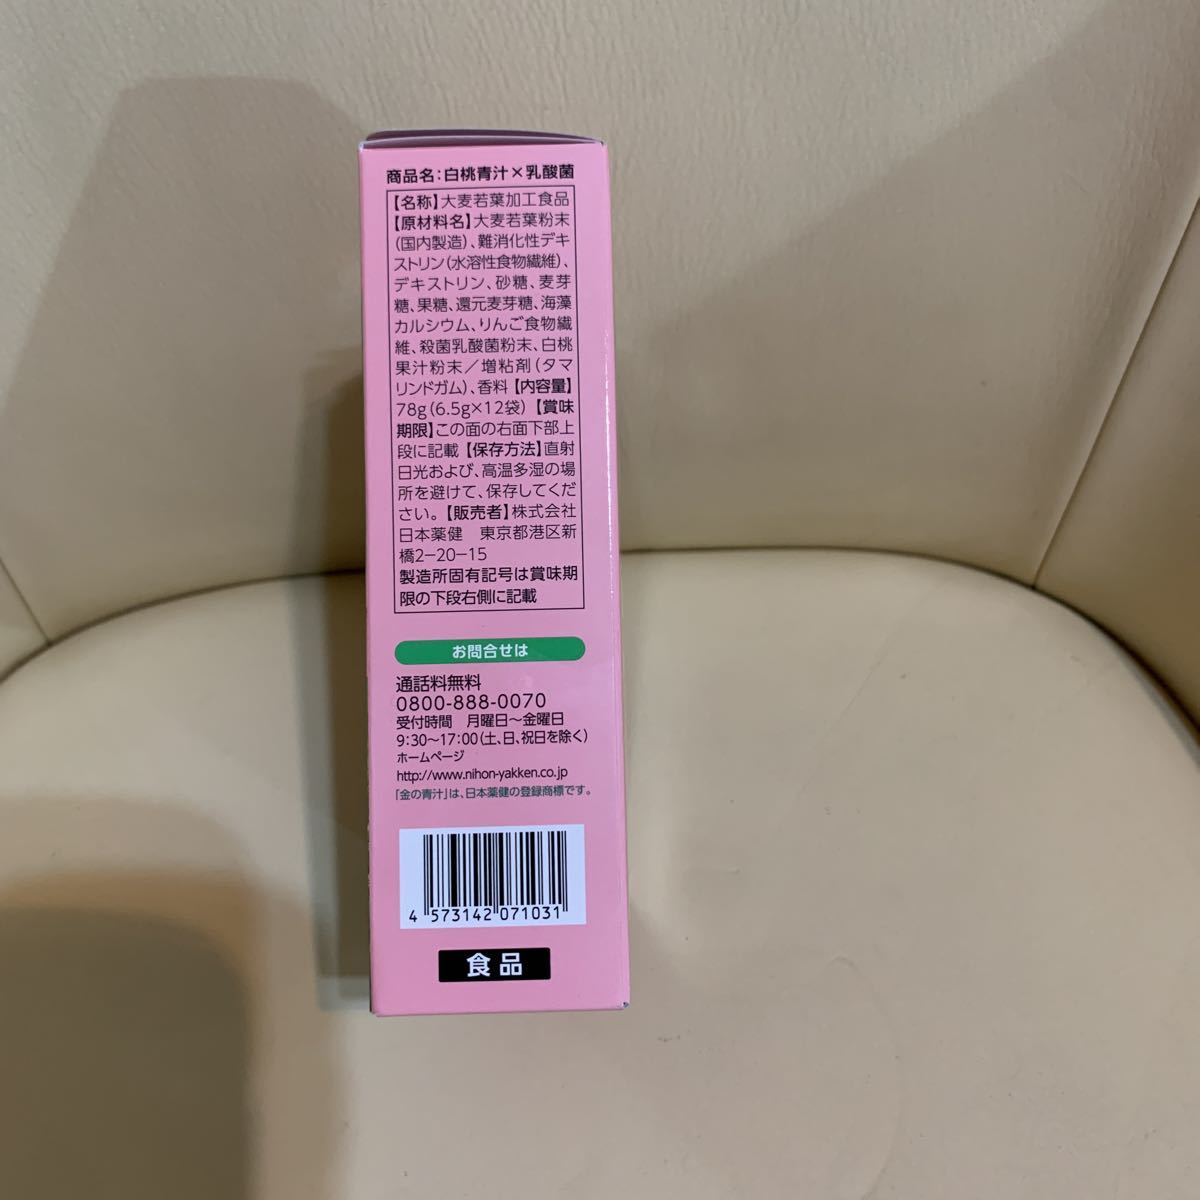 ワンコイン売切 日本薬健 白桃青汁×乳酸菌 青汁、ケール加工食品